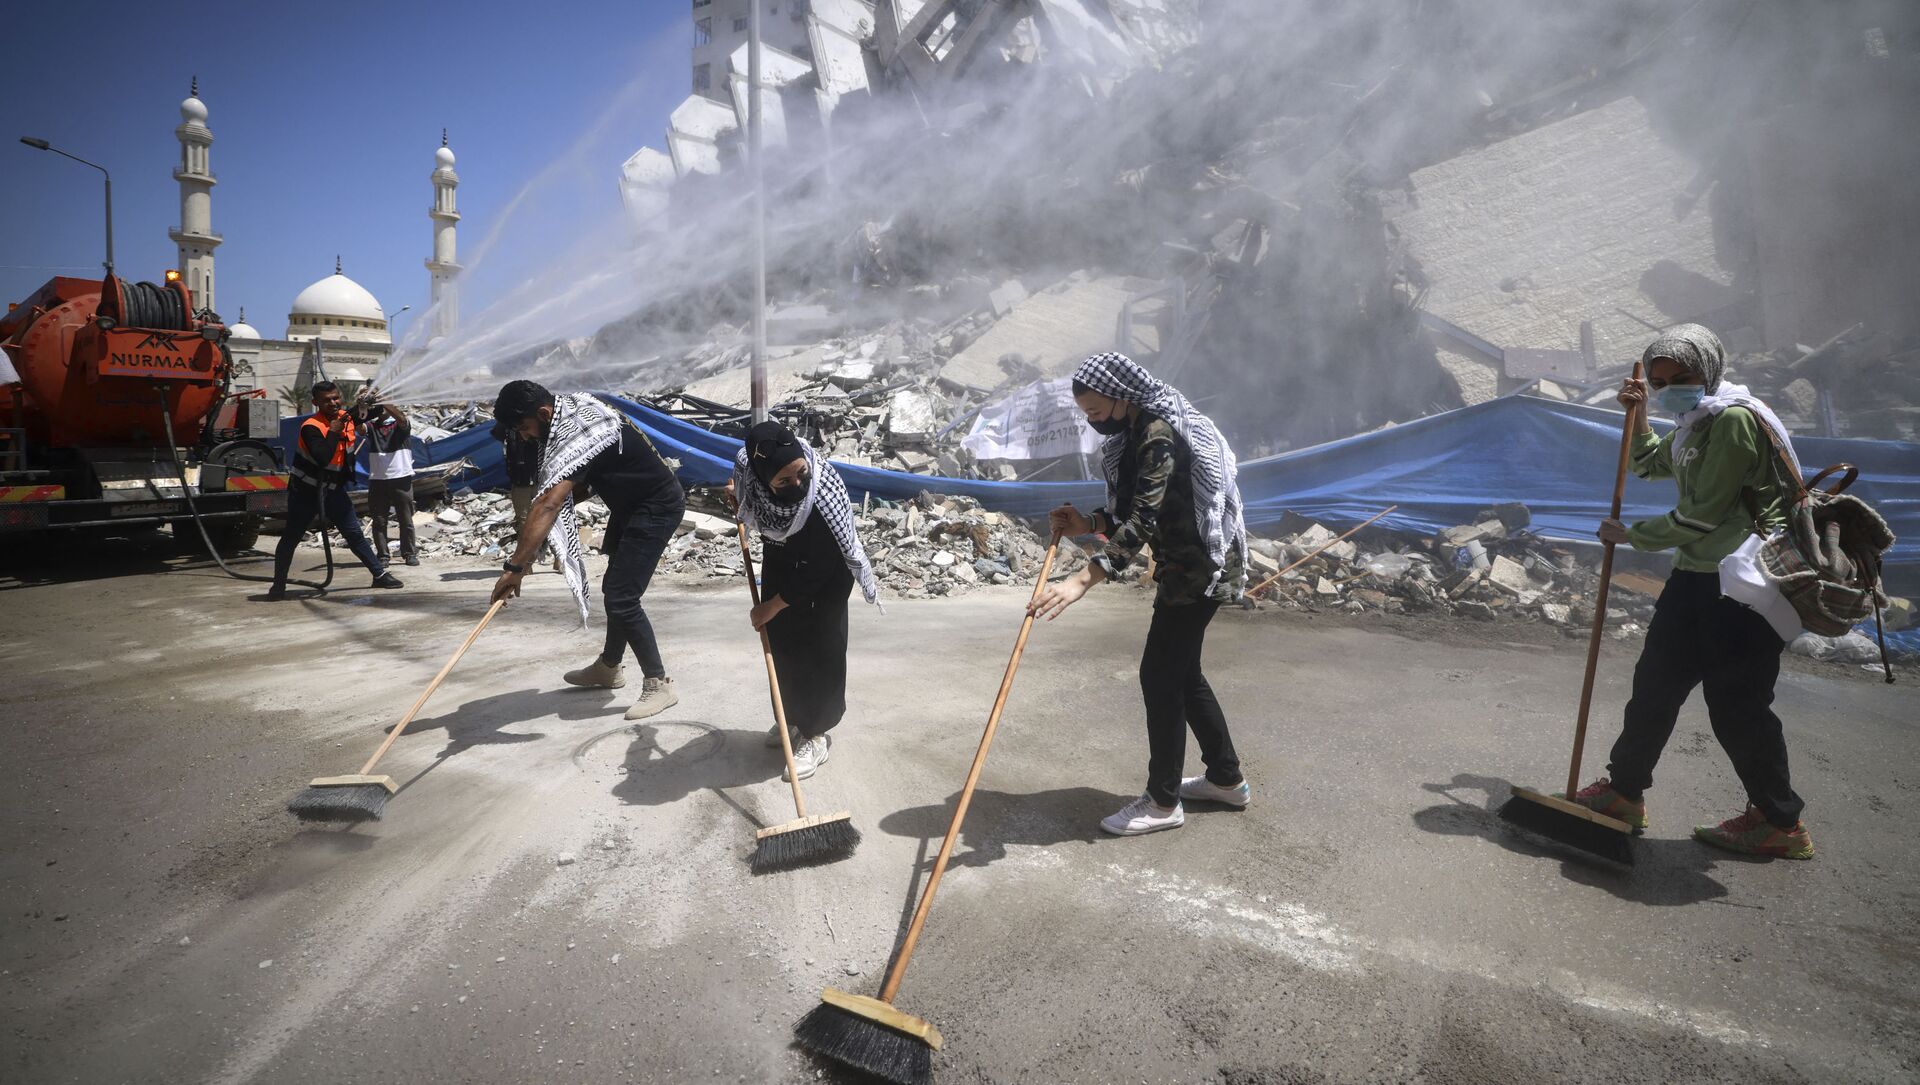 متطوعون فلسطينيون وعمال بلدية يقومون بإزالة أنقاض مجمع برج هنادي، الذي دمرته الغارات الإسرائيلية في الحرب الأخيرة، في حي الرمال بمدينة غزة، في 25 مايو 2021 - سبوتنيك عربي, 1920, 30.05.2021